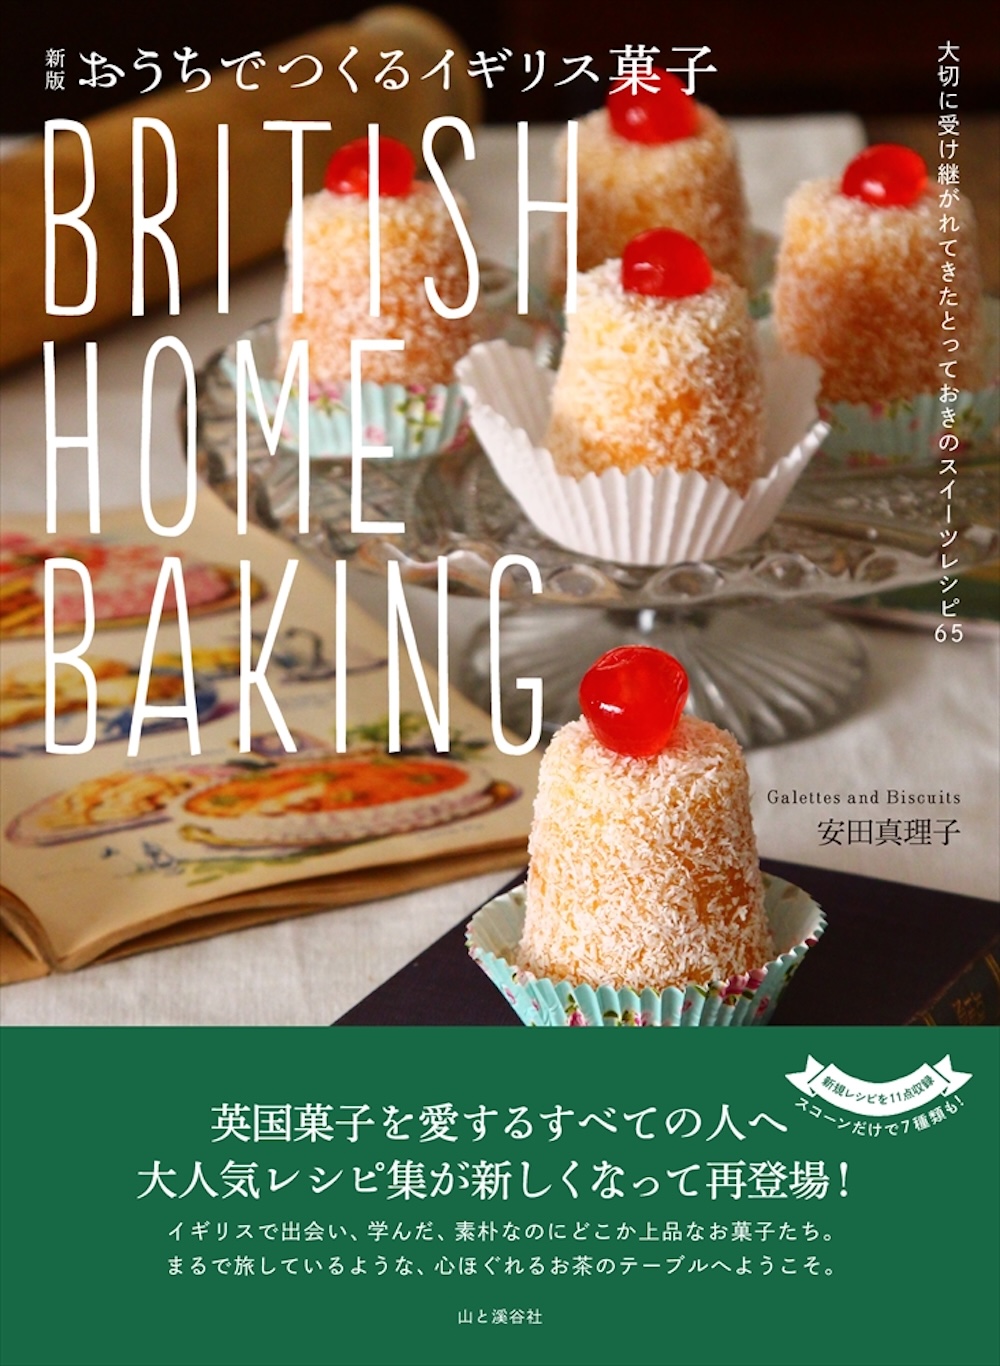 6月17日、書籍「新版 おうちでつくるイギリス菓子 BRITISH HOME BAKING」（山と溪谷社）が発売された。著者はイギリス菓子教室「Galettes and Biscuits」を主宰する安田真理子さん。価格は税込み1,870円。B5判・128ページ。